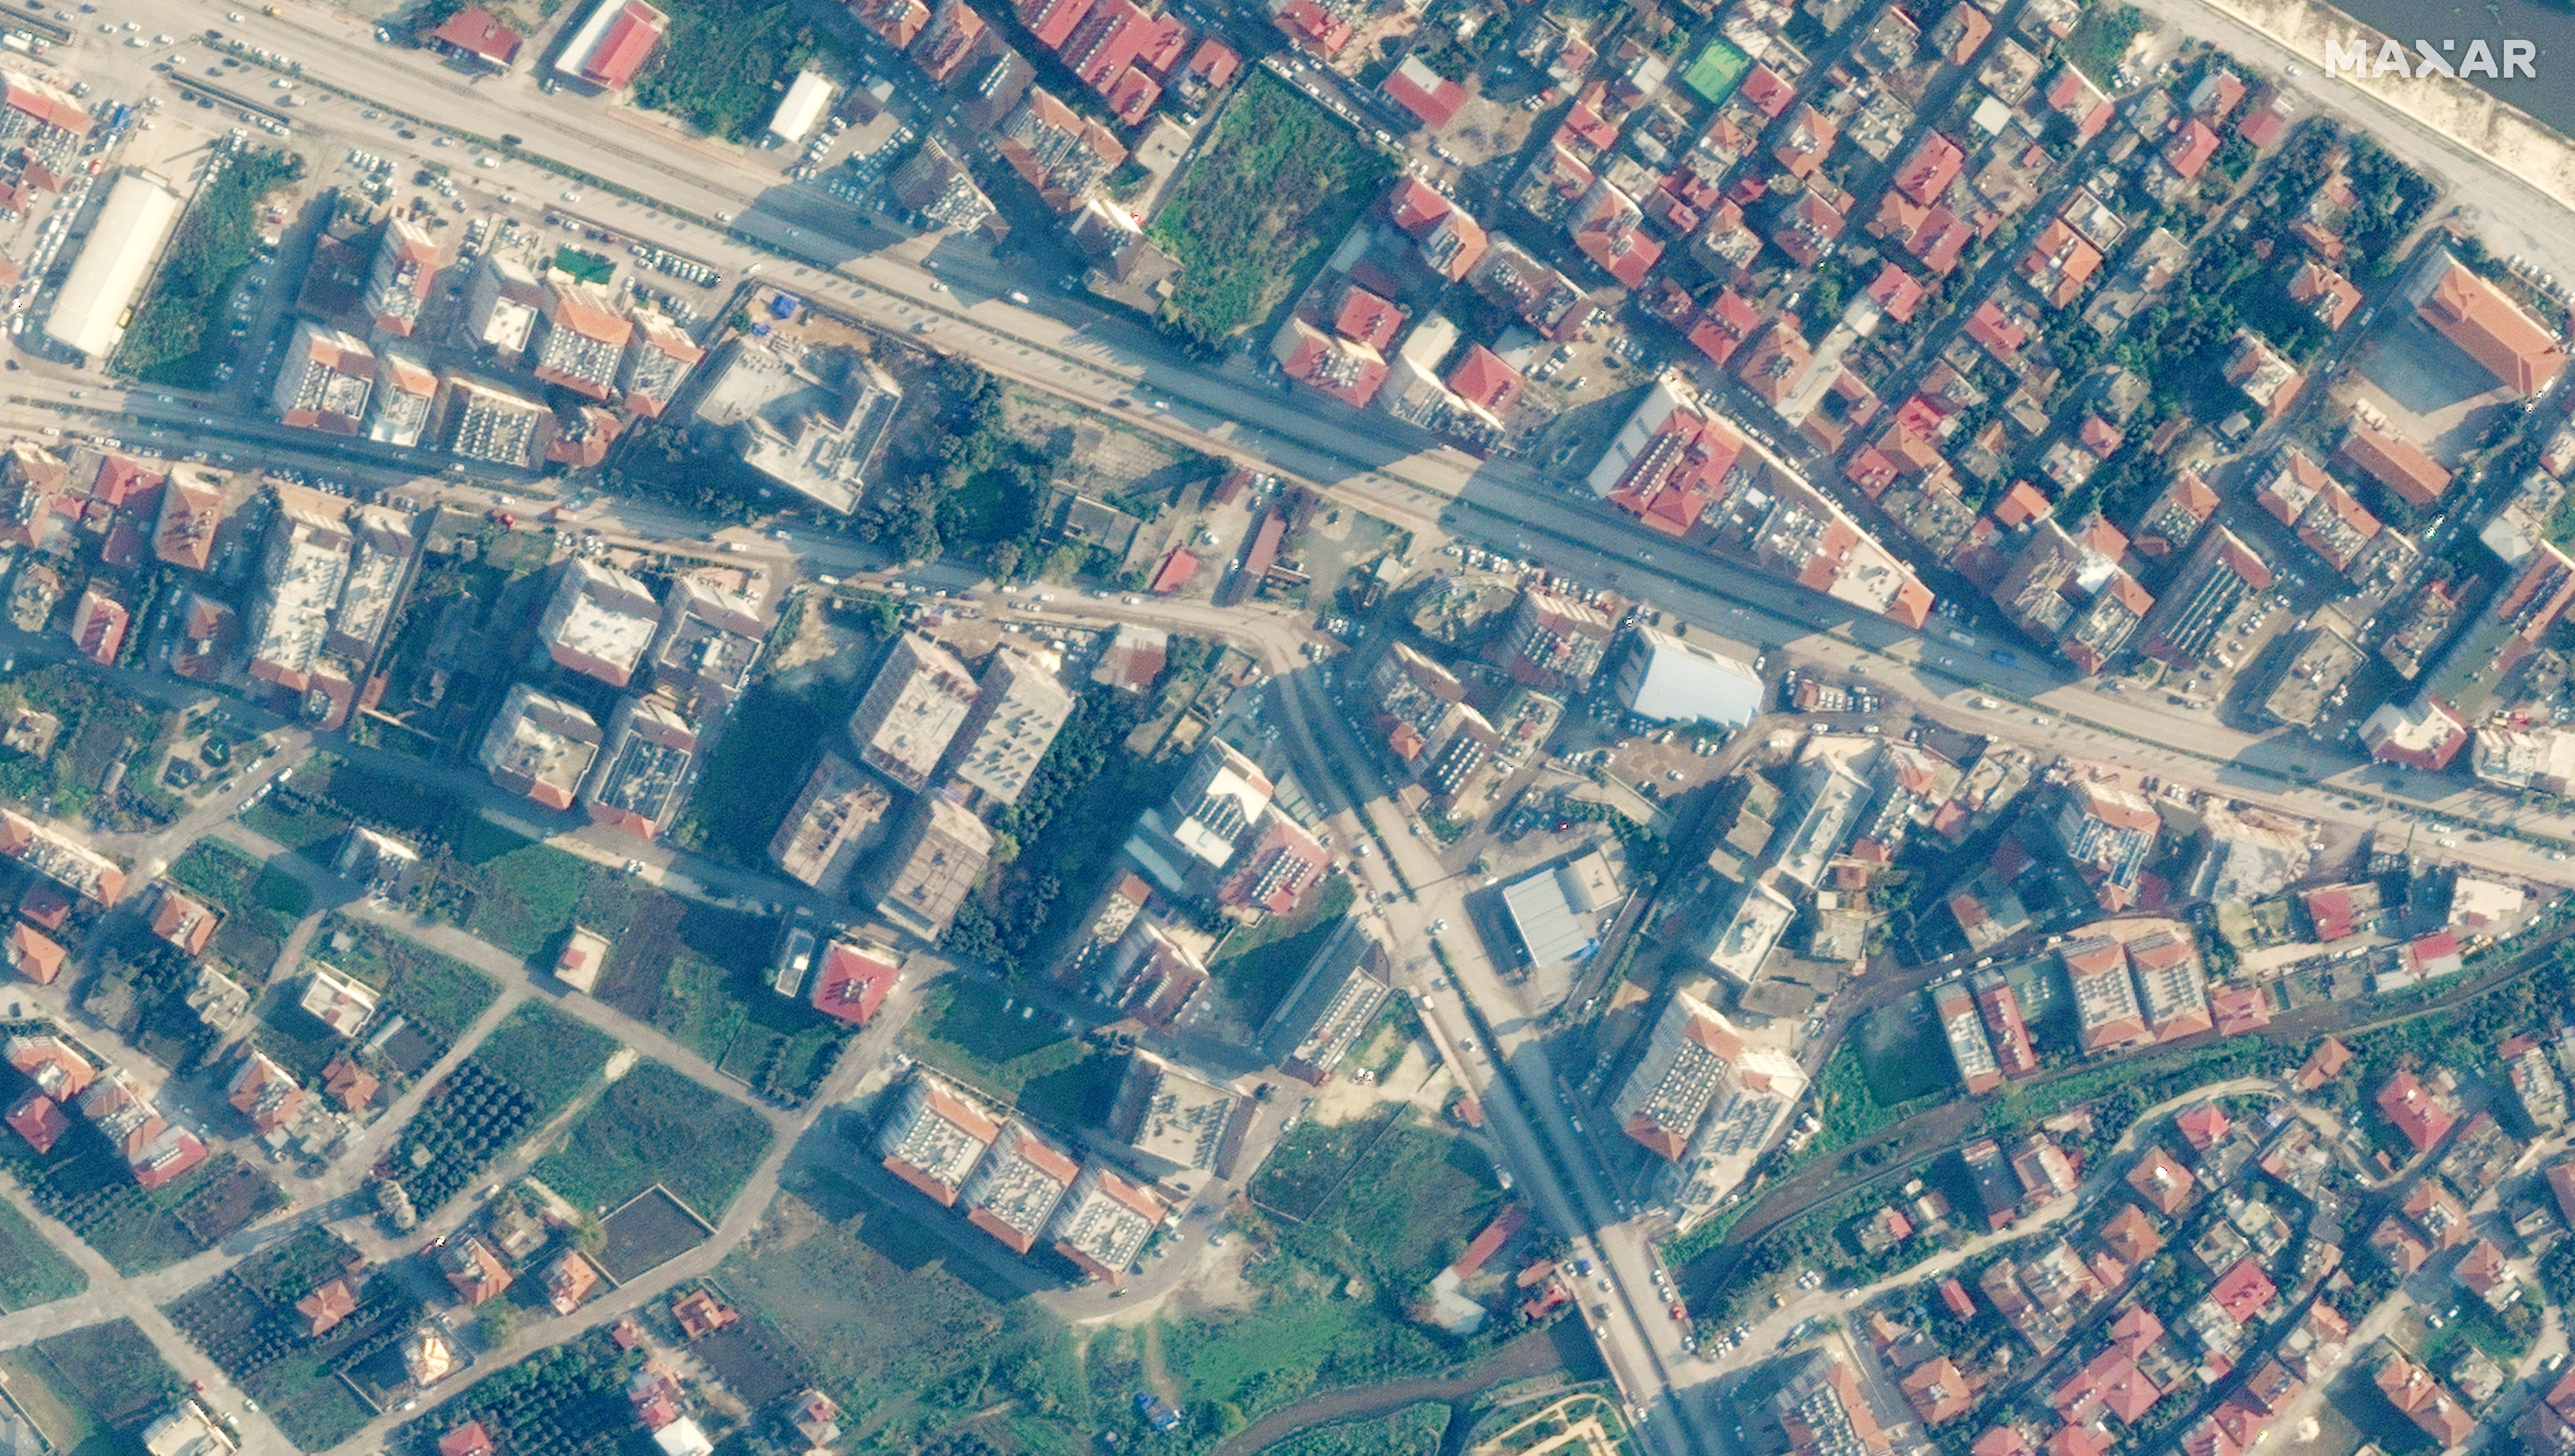 Así se veían dos meses antes del terremoto, los edificios en una zona de Antakya. Imagen satelital ©2023 Maxar Technologies/Handout via REUTERS 